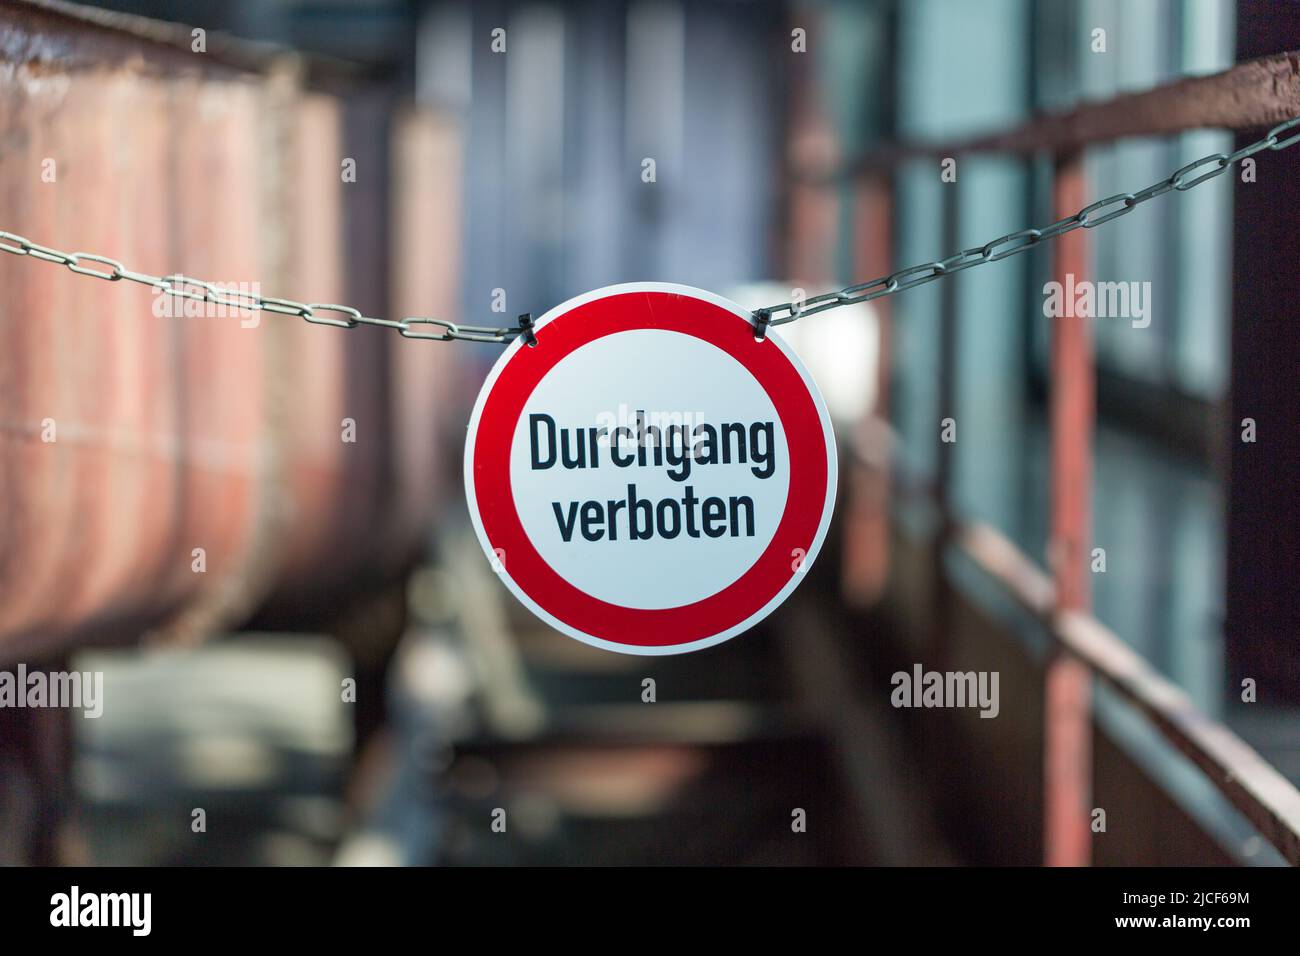 Essen, Alemania - Mar 26, 2022: Durchgang verboten (paso o acceso denegado) signo dentro de una fábrica. Signo redondo, colgado en una cadena. Fondo borroso. Foto de stock